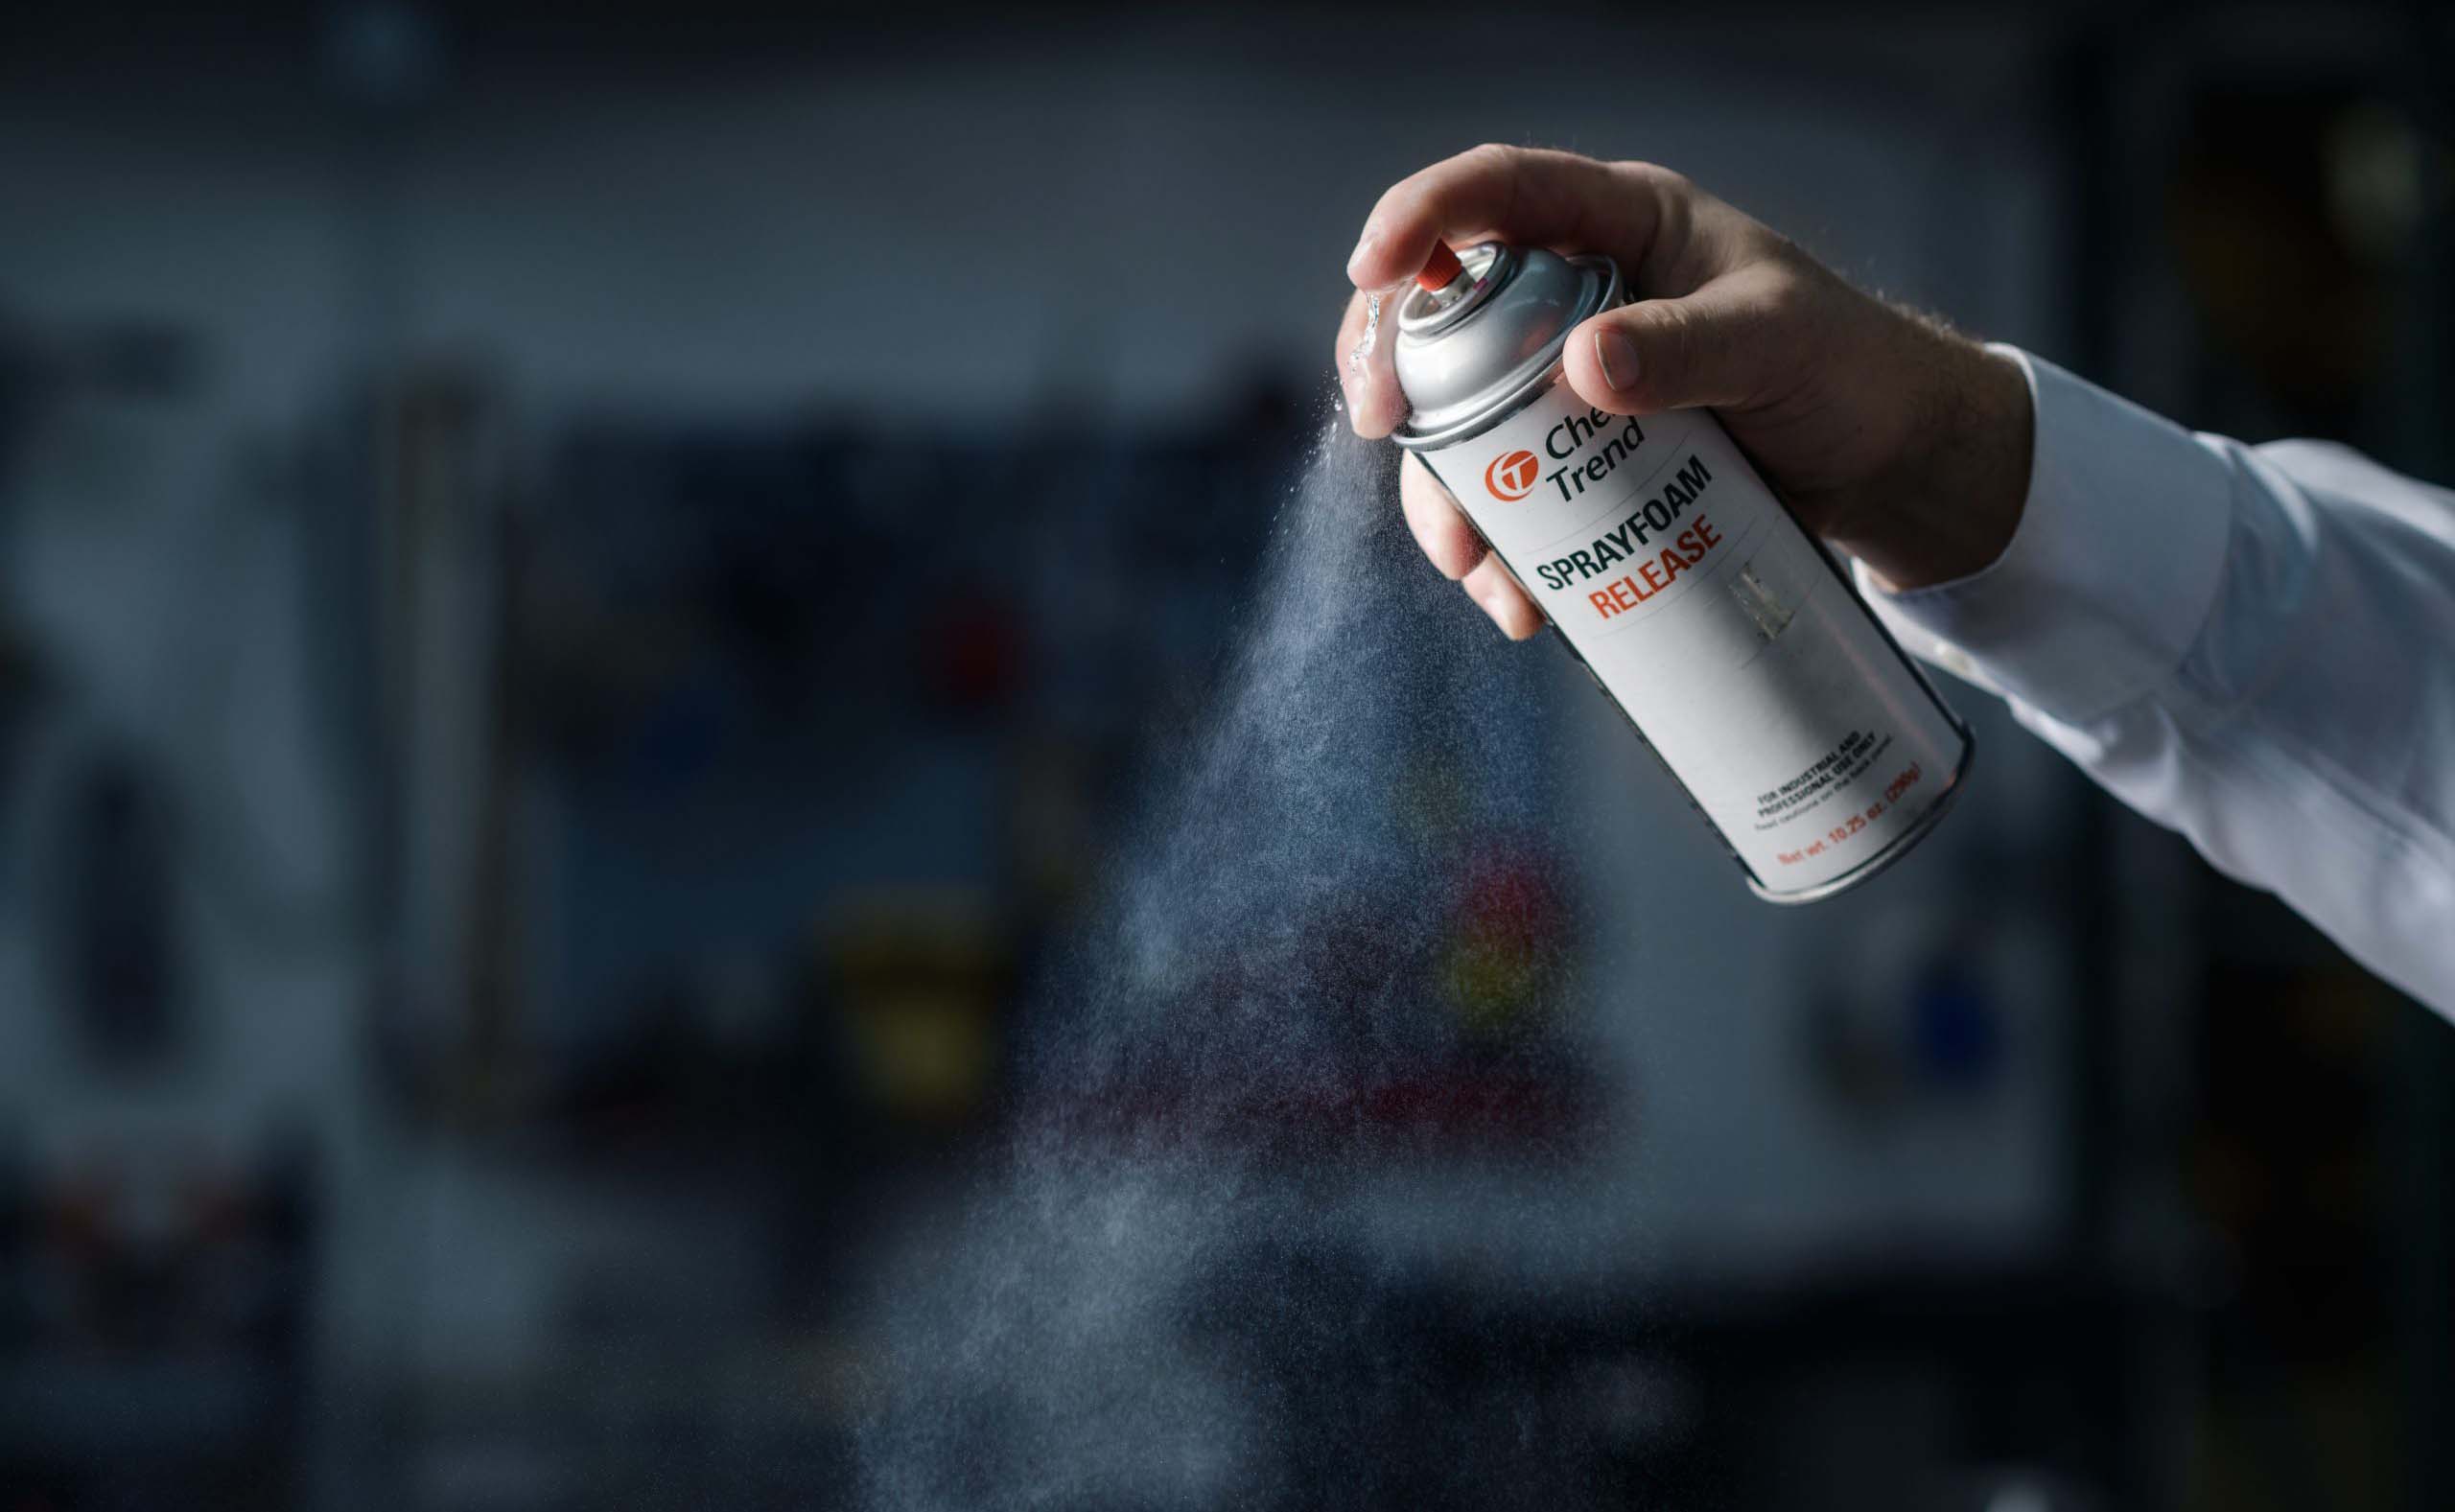 Stylized shot of person spraying Sprayfoam Release